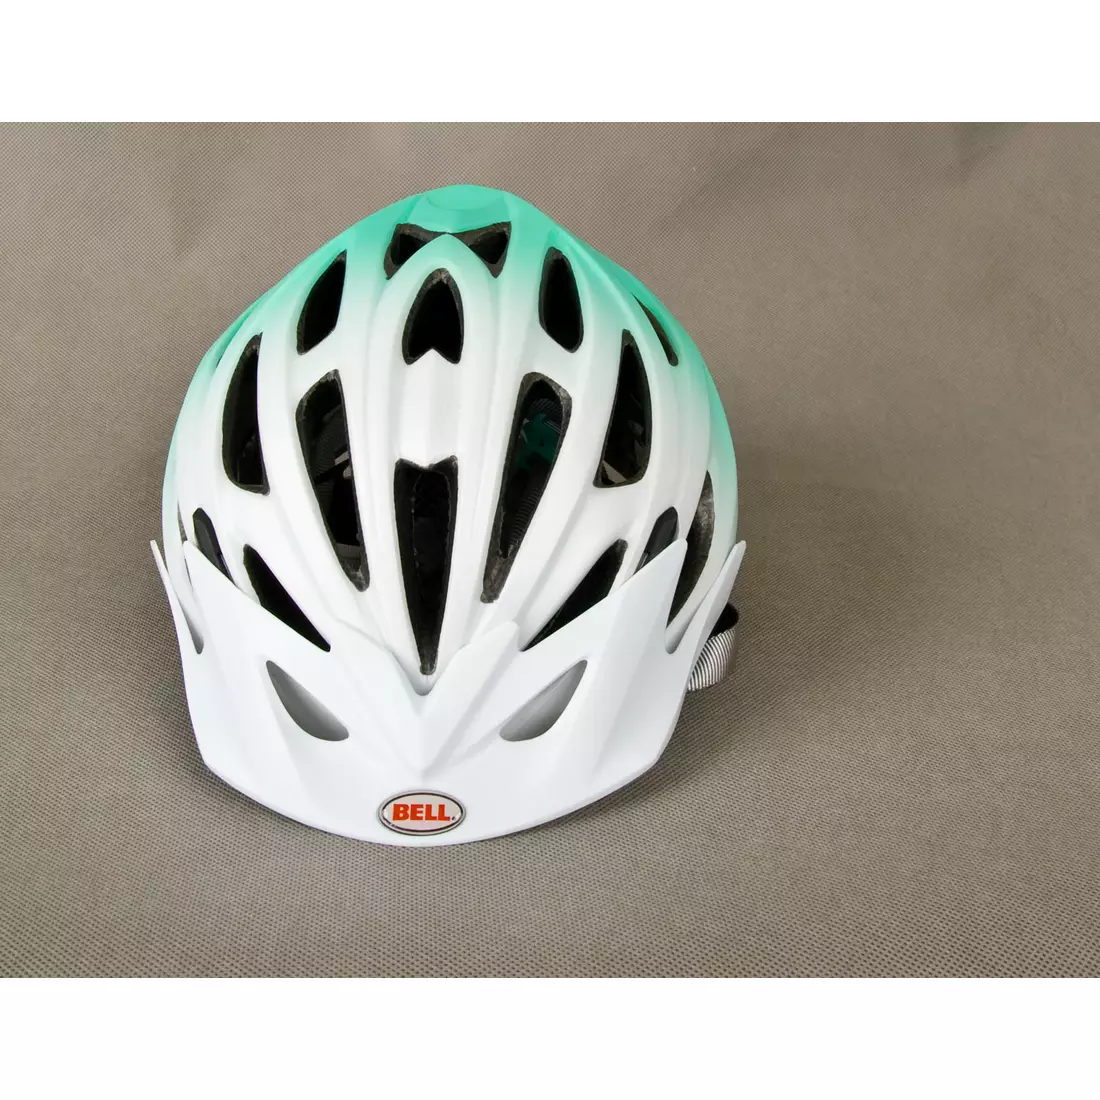 BELL SOLARA - casca de bicicleta dama, alb si verde